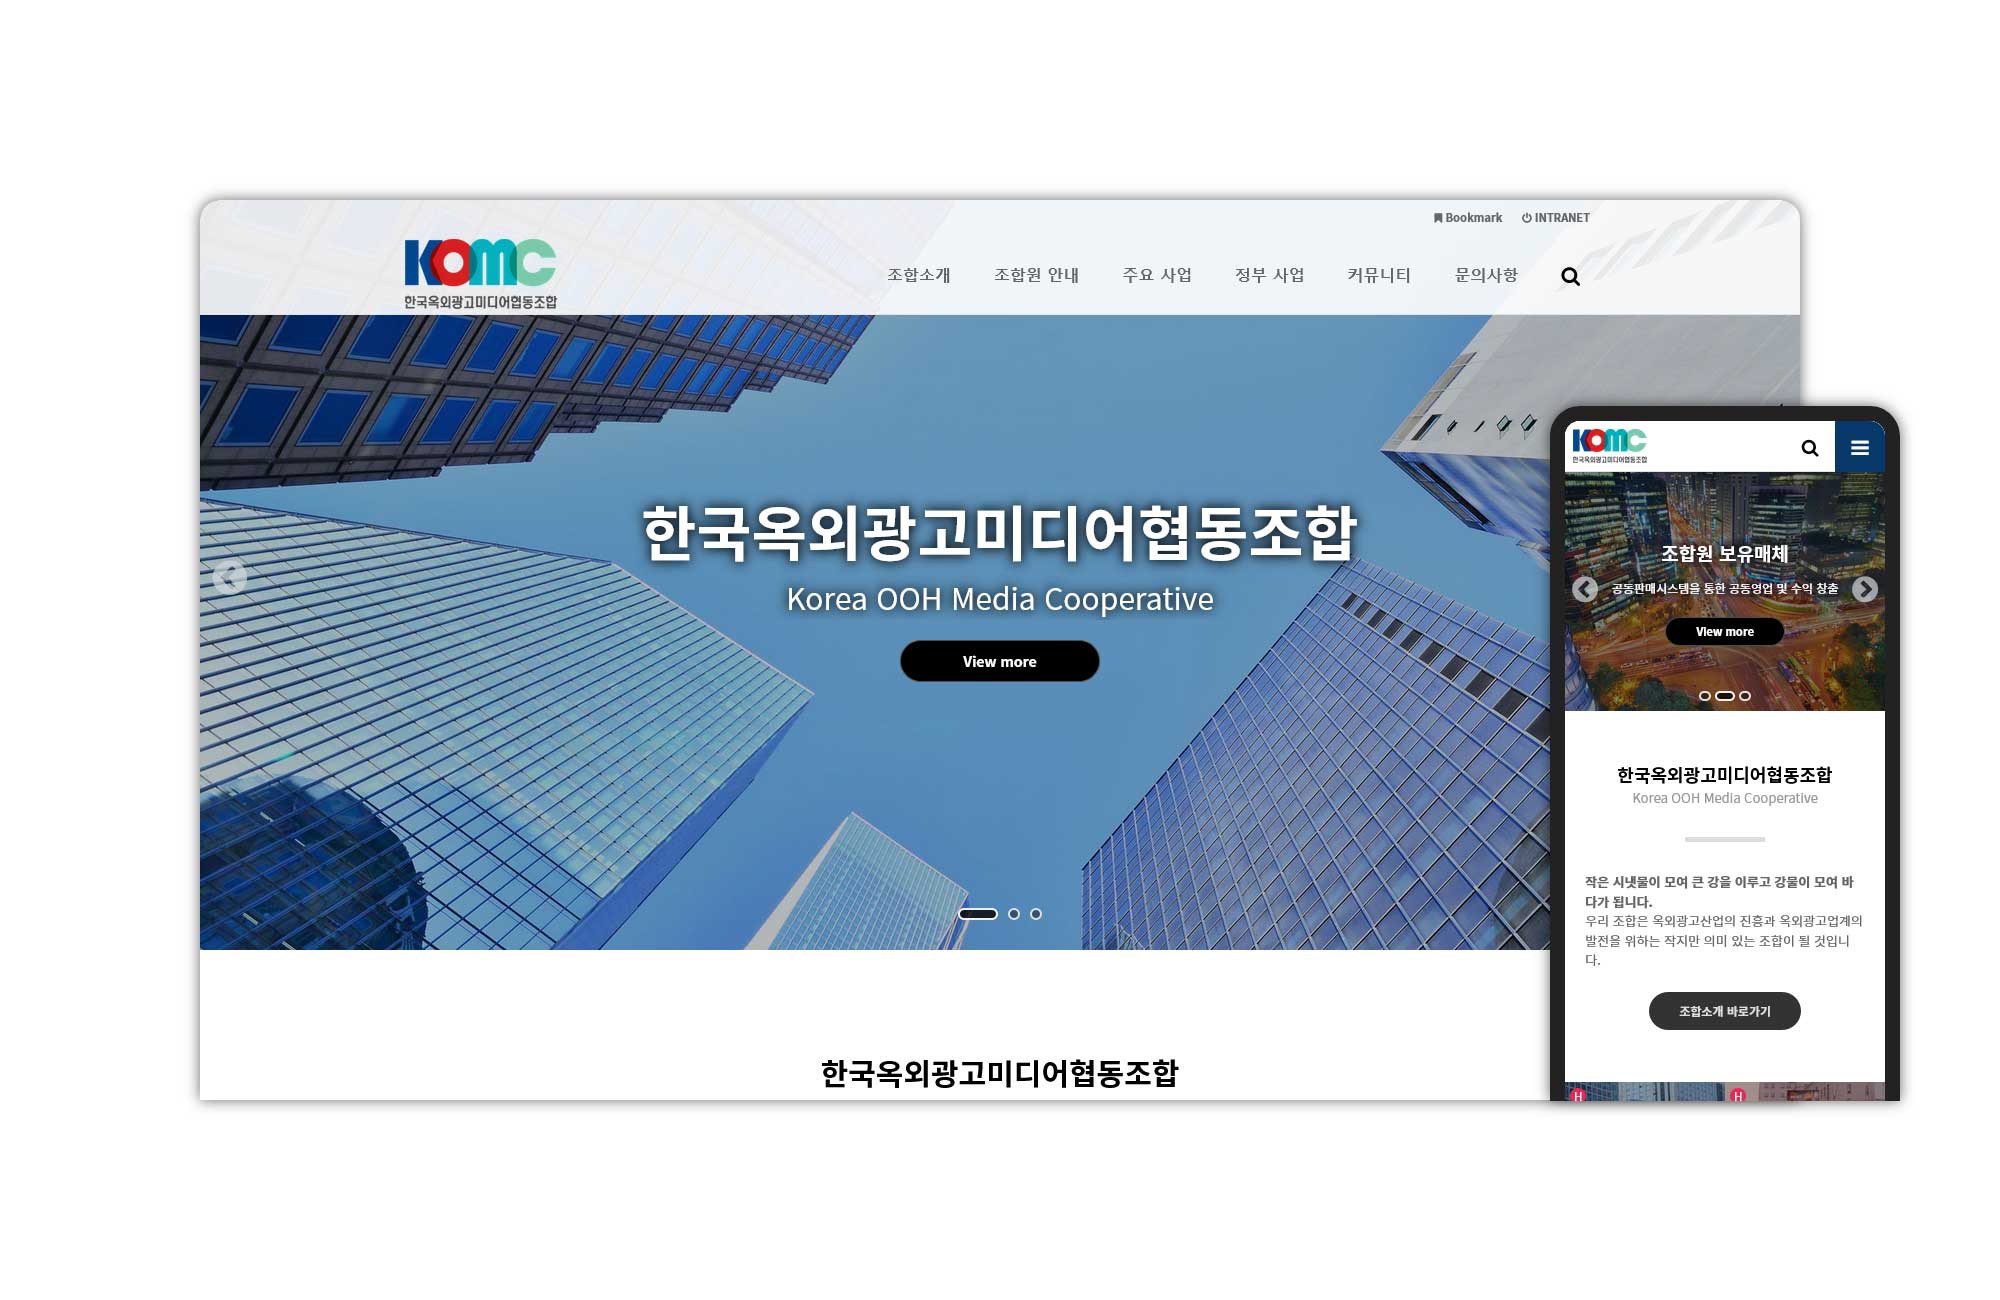 한국옥외광고미디어협동조합